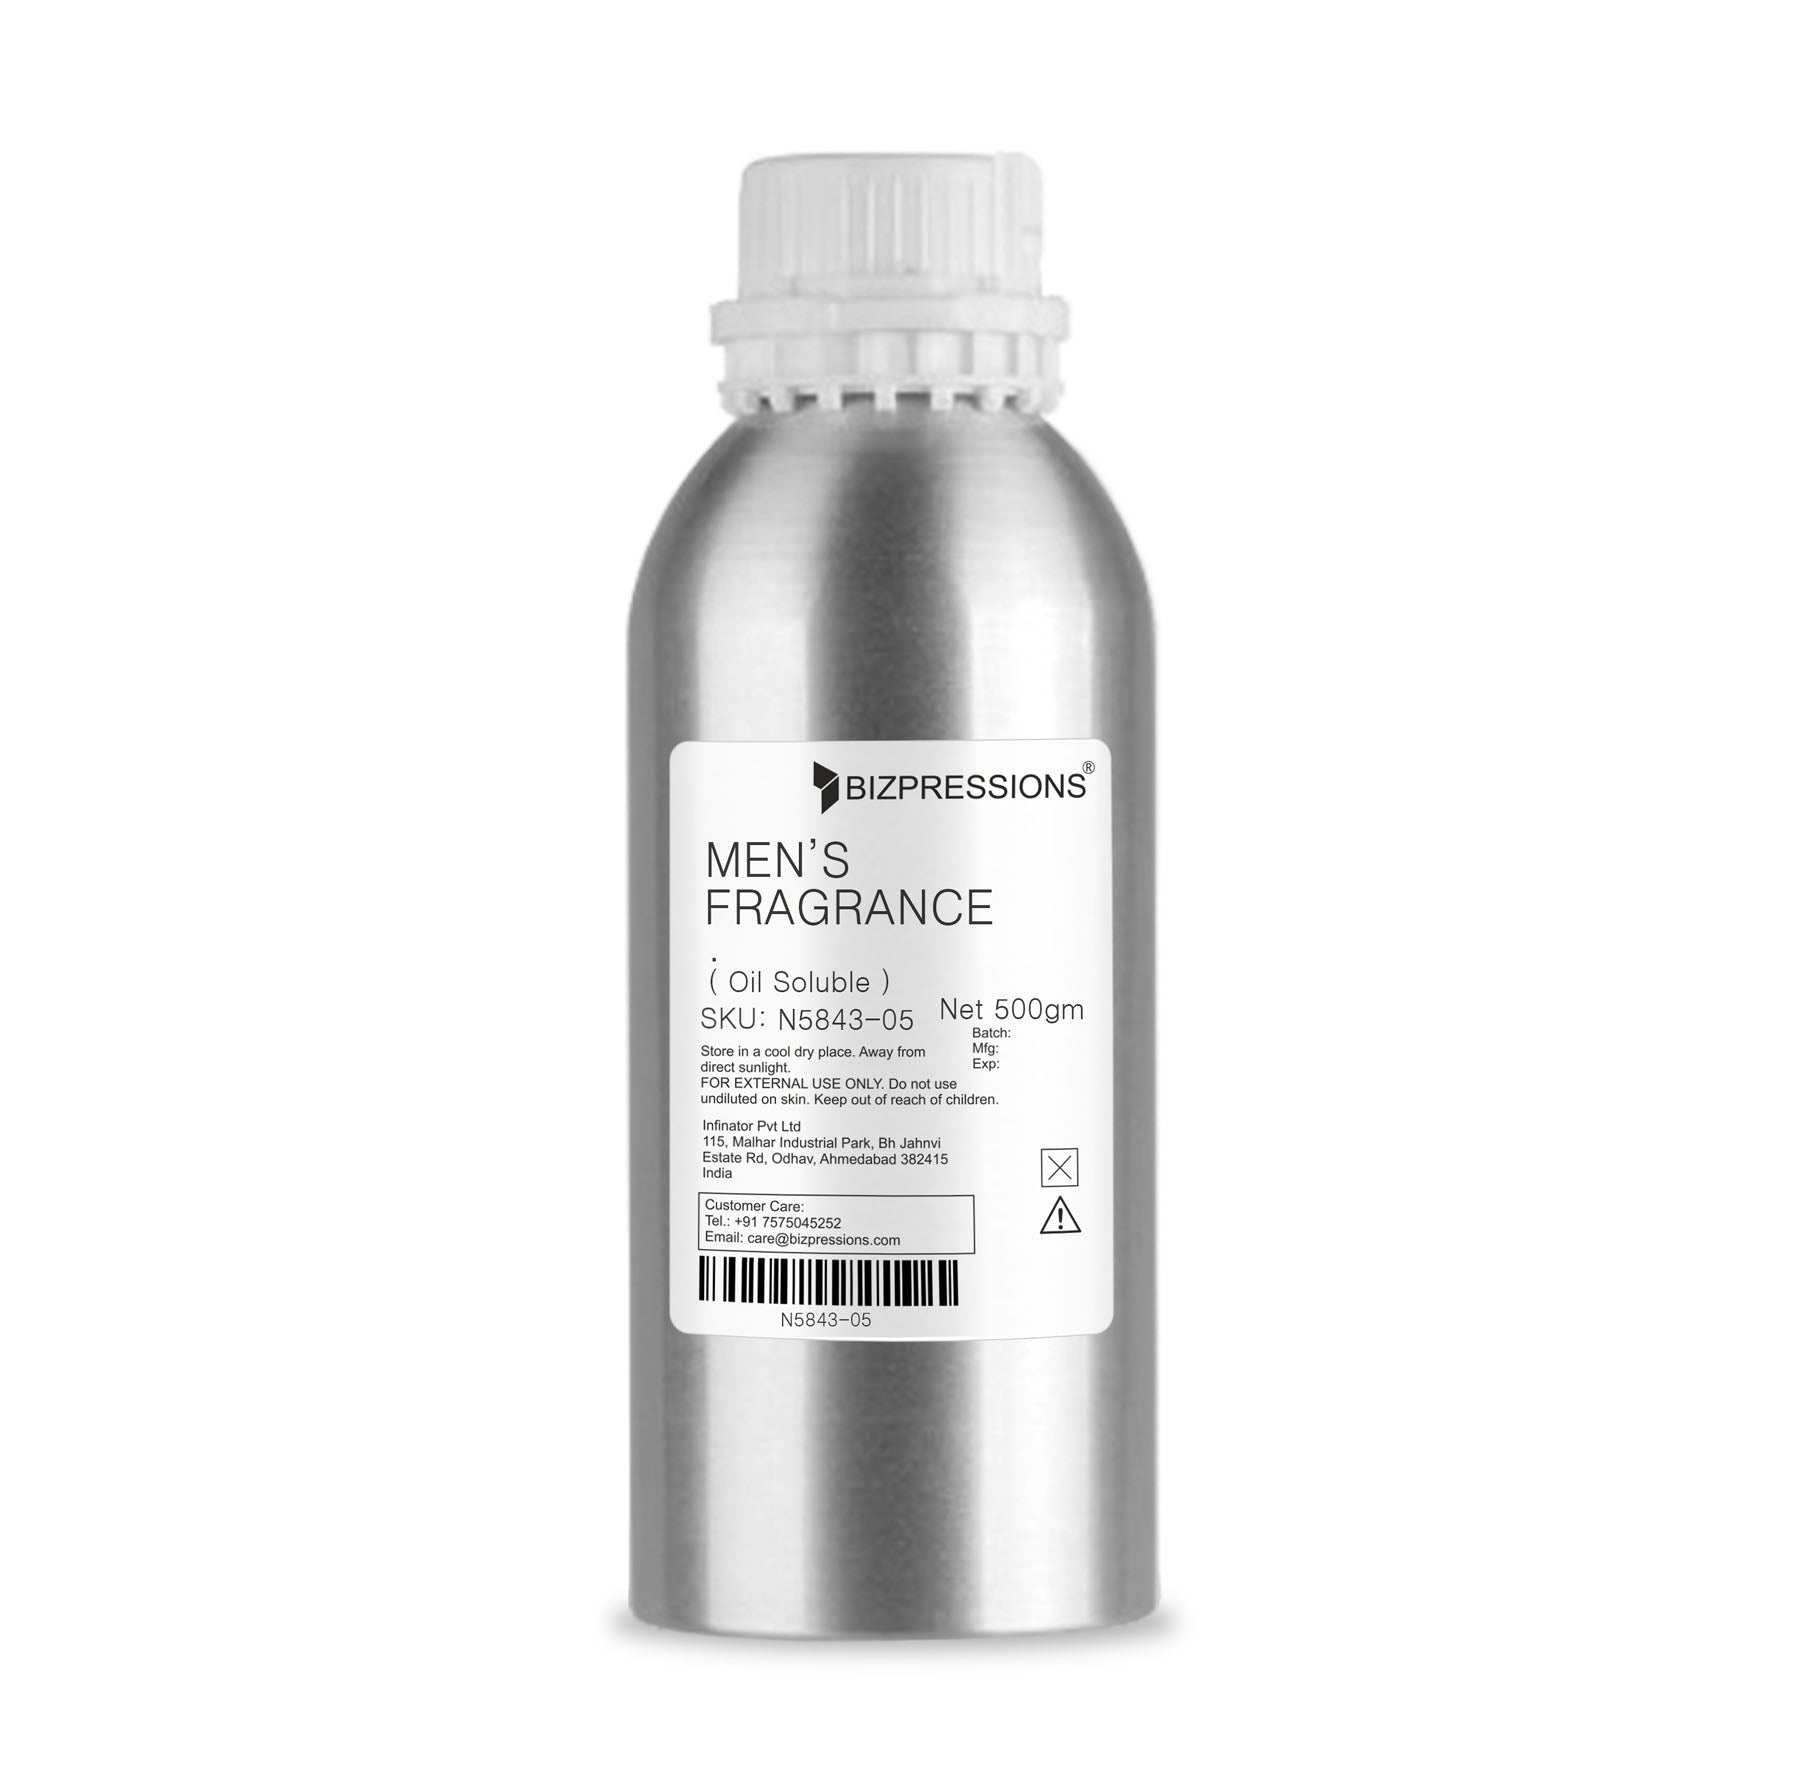 MEN'S FRAGRANCE - Fragrance ( Oil Soluble ) - 500 gm